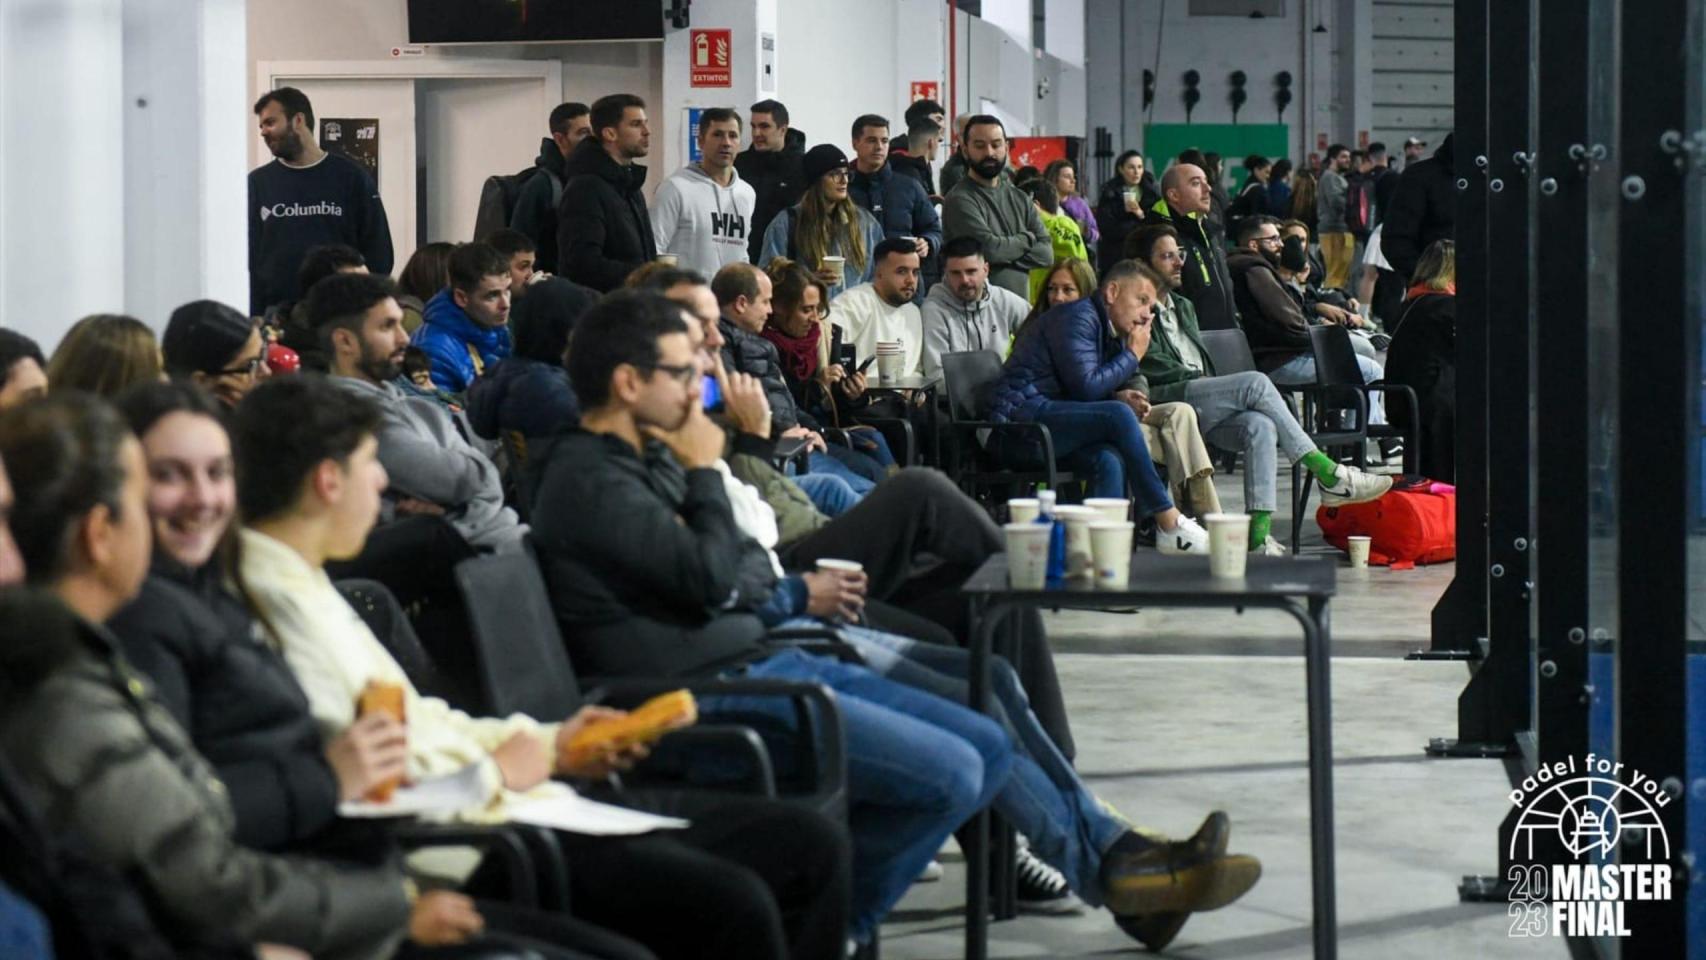 Padel For You inaugura temporada en A Coruña con apertura de inscripciones para su primera prueba